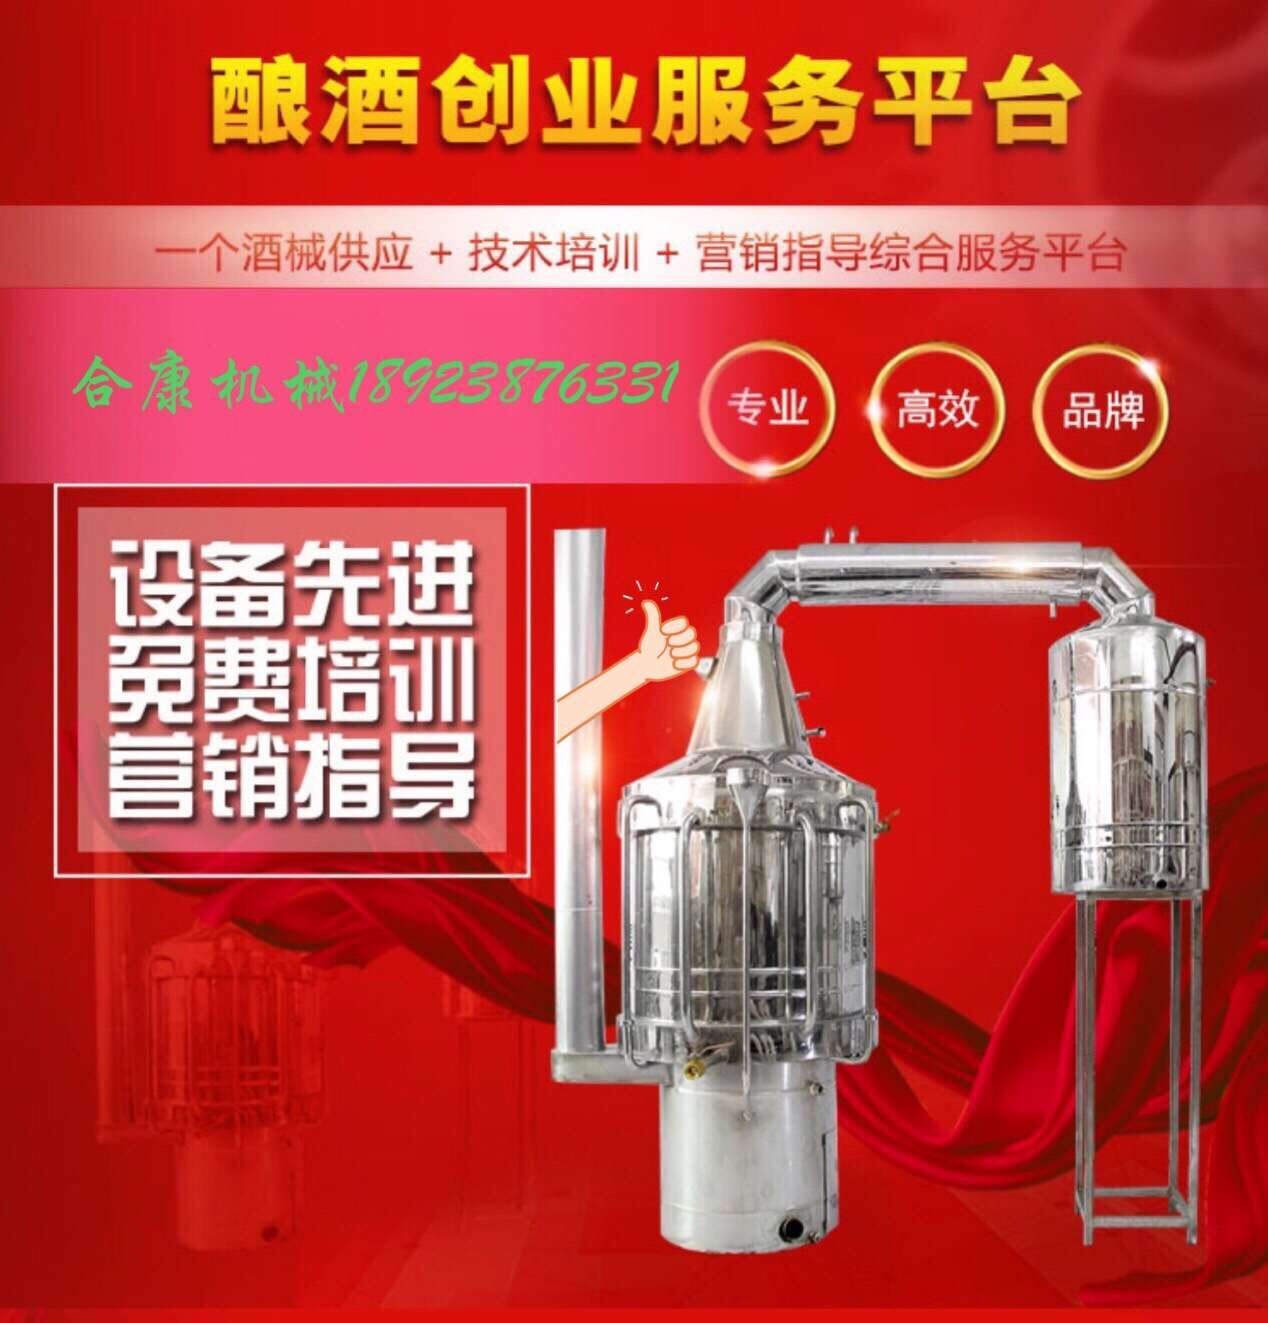 深圳合康灌装机厂家 灌装机价格 灌装机哪家好  灌装机